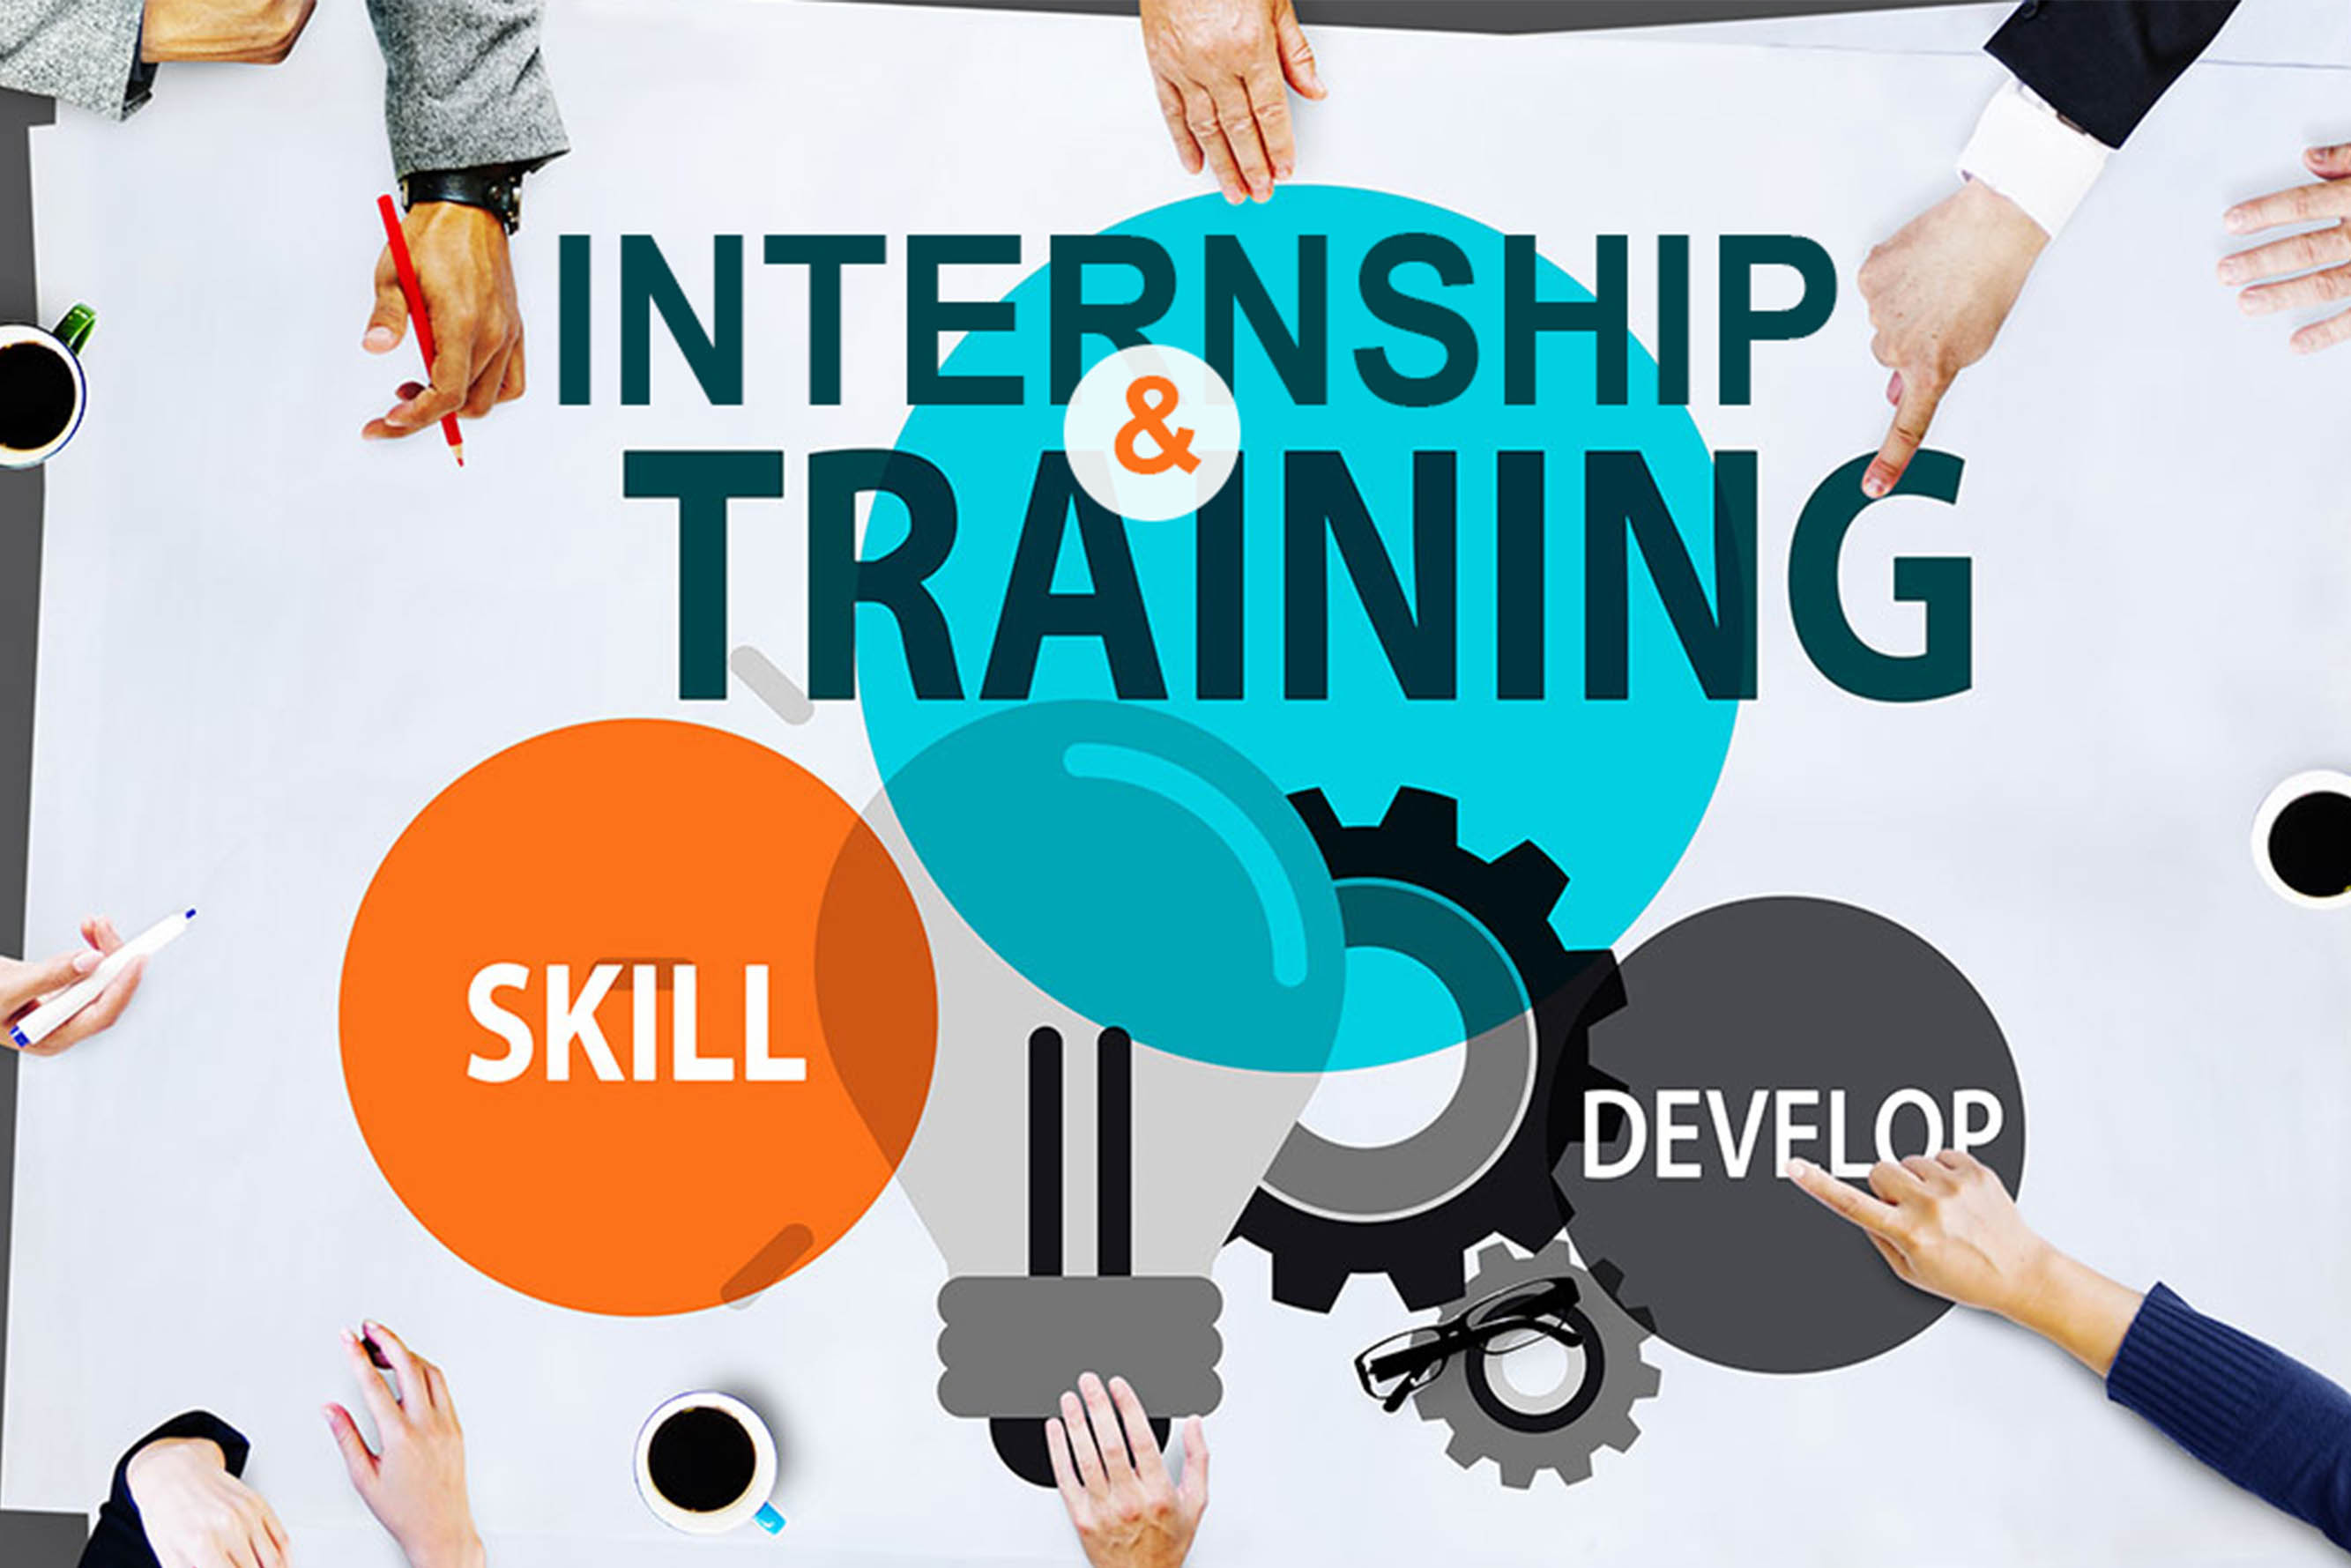 Training & Internship